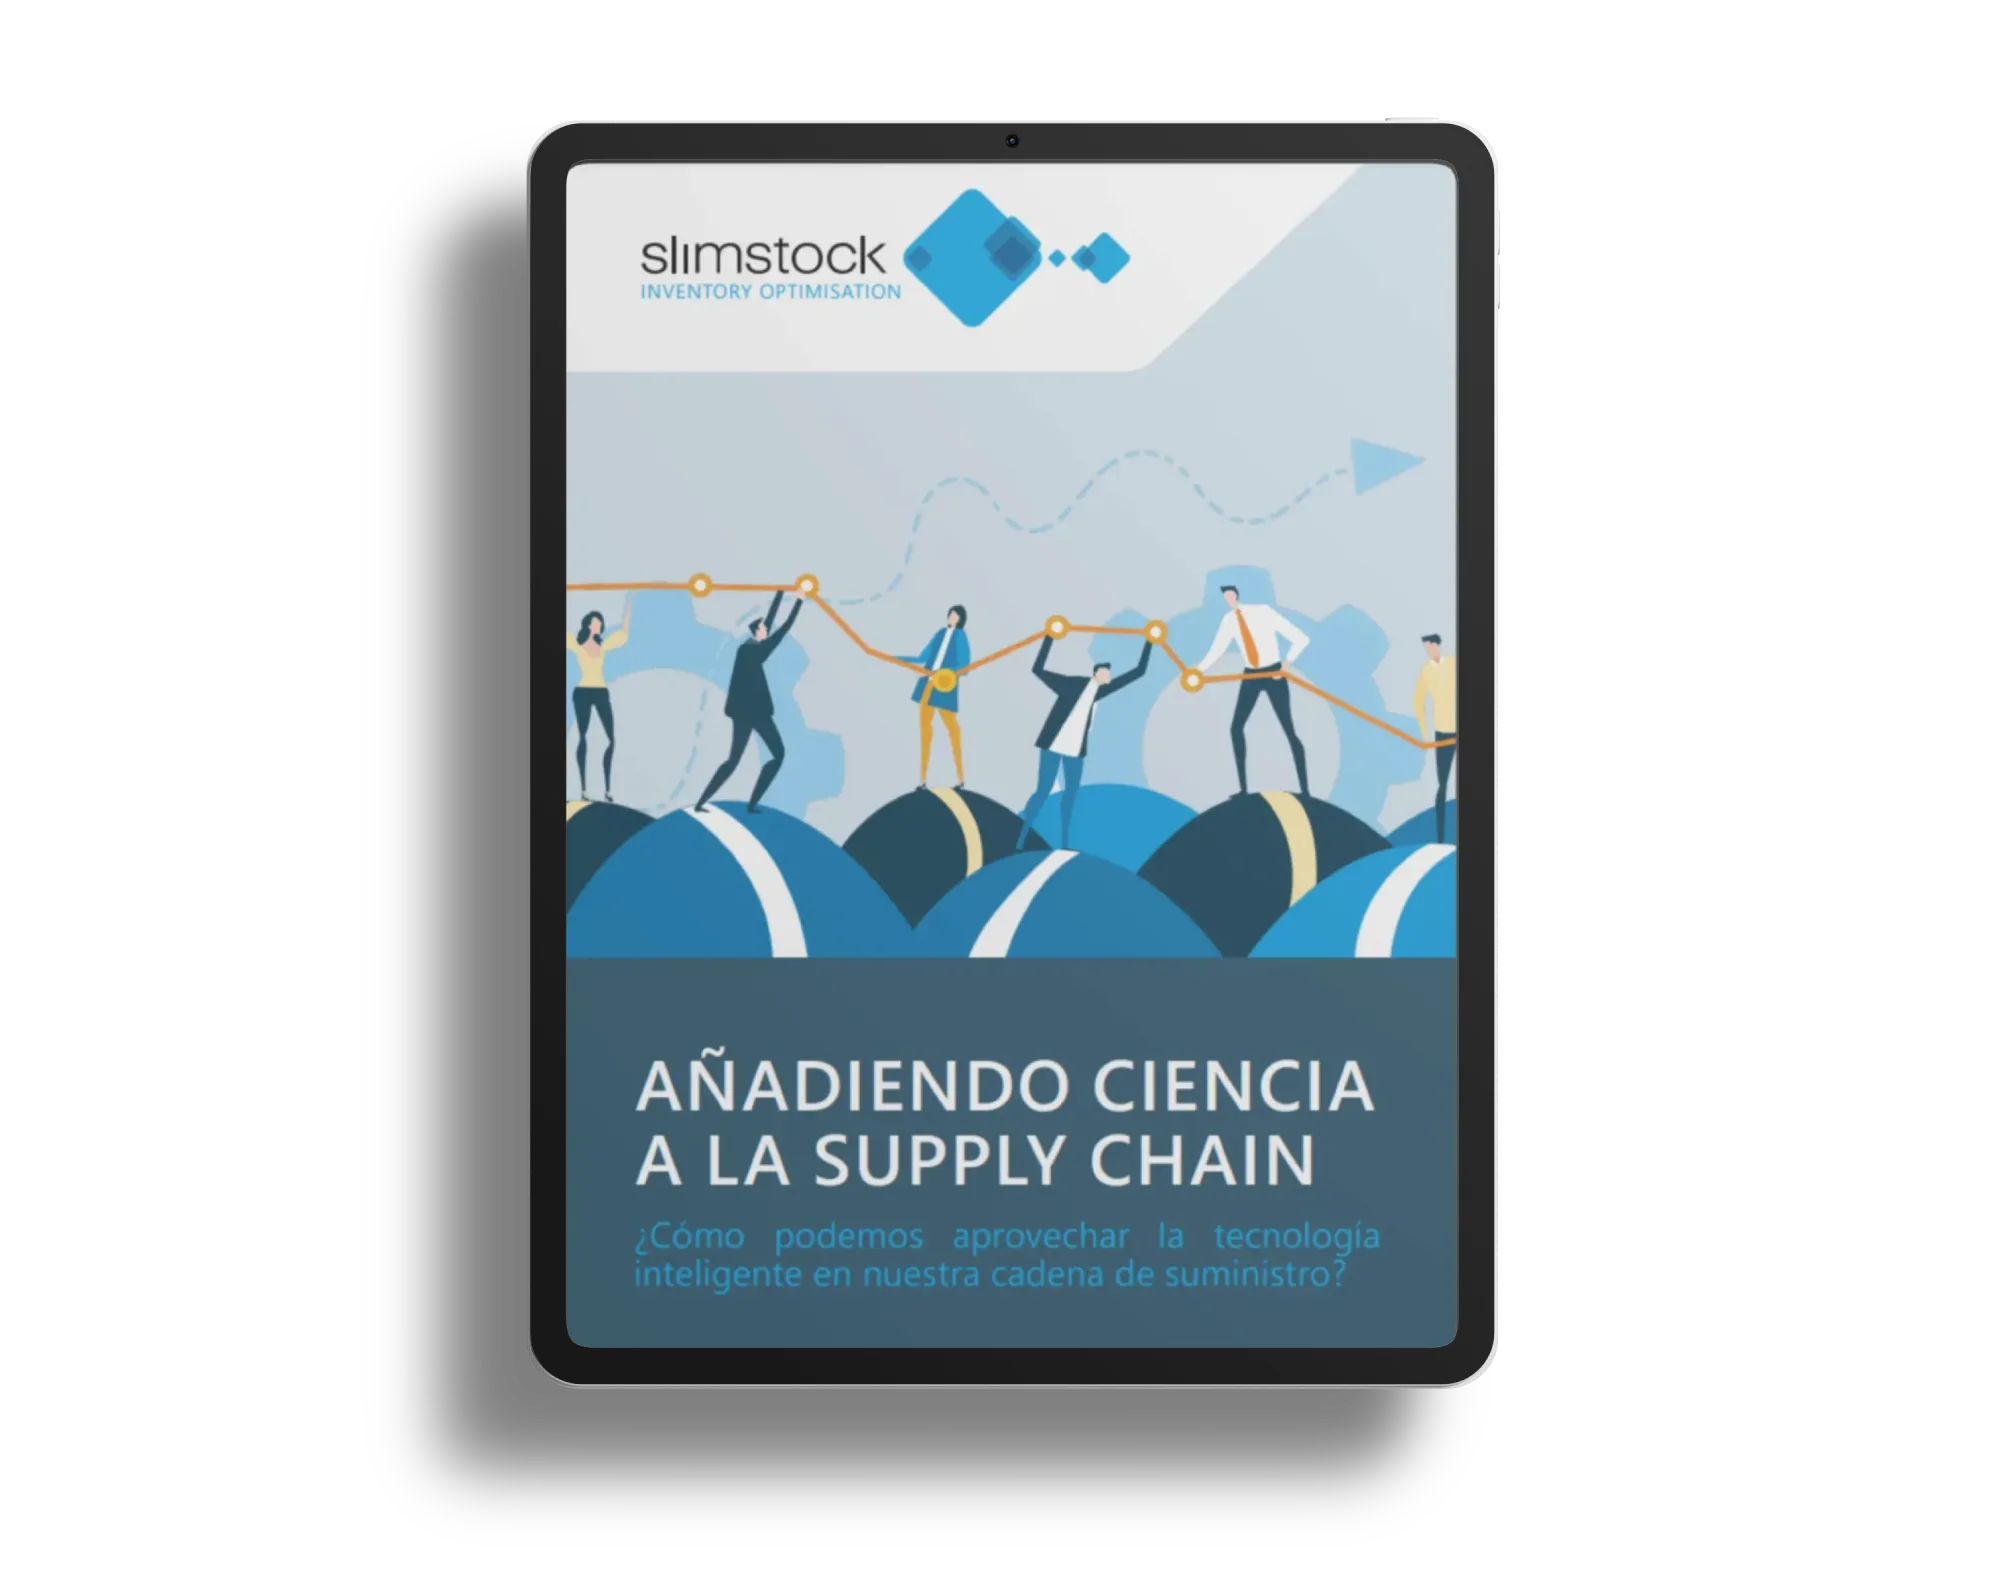 https://www.slimstock.com/wp-content/uploads/2021/09/anadiendo-ciencia-a-la-supply-chain.webp